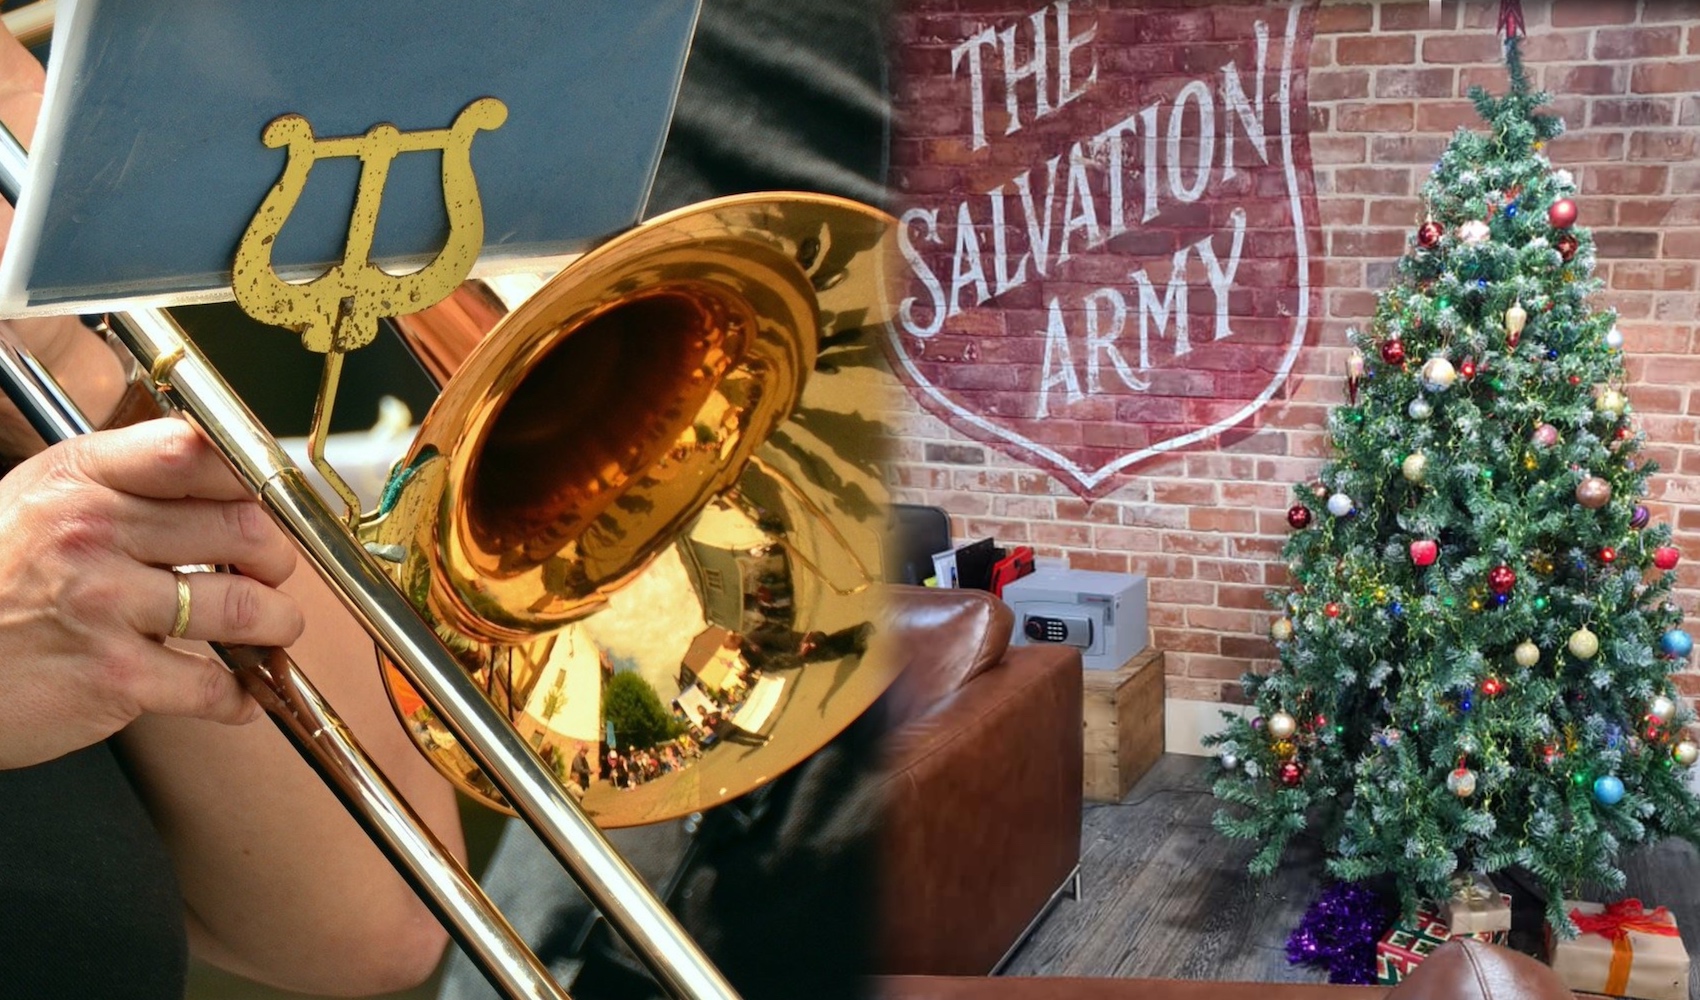 WATCH Brass band's musical 'Advent calendar' to help vulnerable